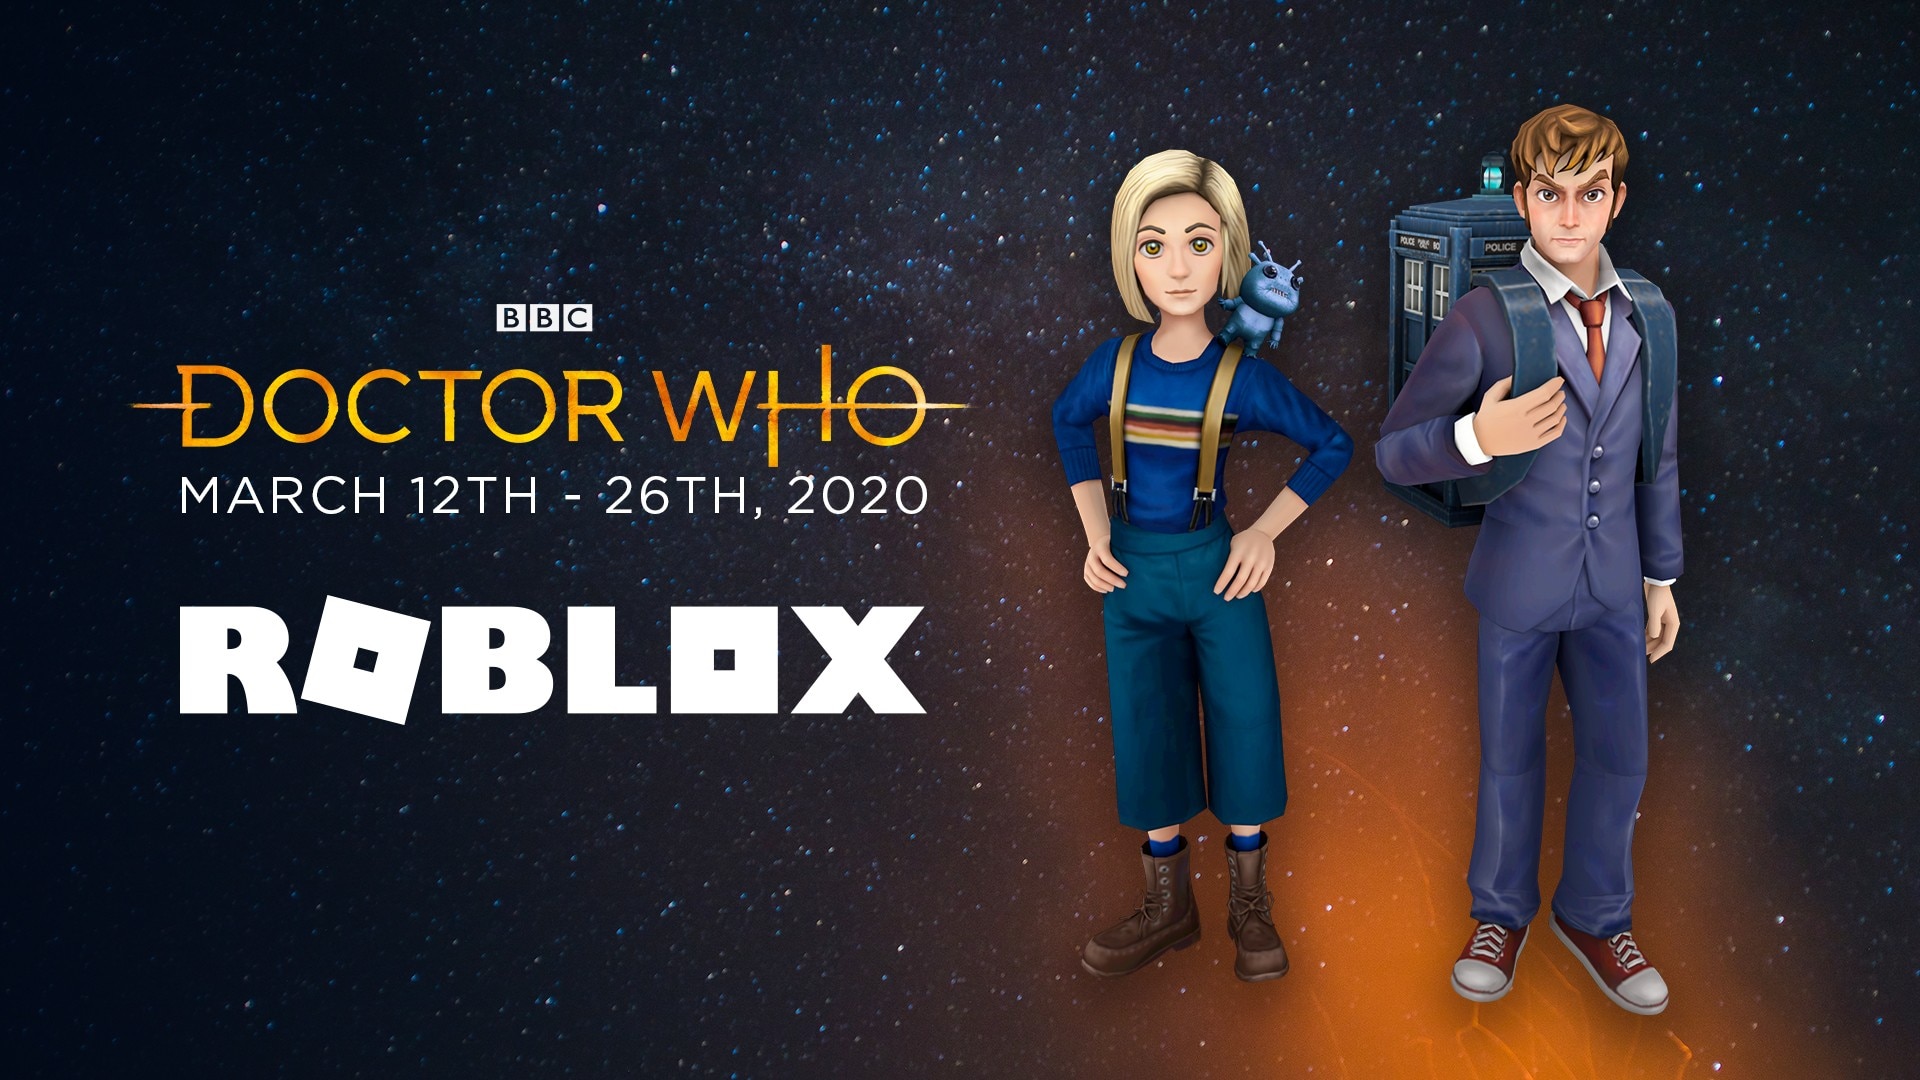 Sự kiện Avatar Roblox của Doctor Who đang đến gần, và đó sẽ là một trải nghiệm khám phá vô cùng thú vị! Hãy chuẩn bị sẵn sàng để bước vào một cuộc phiêu lưu với những chuyến đi trên thời gian và không gian vô cùng hấp dẫn.